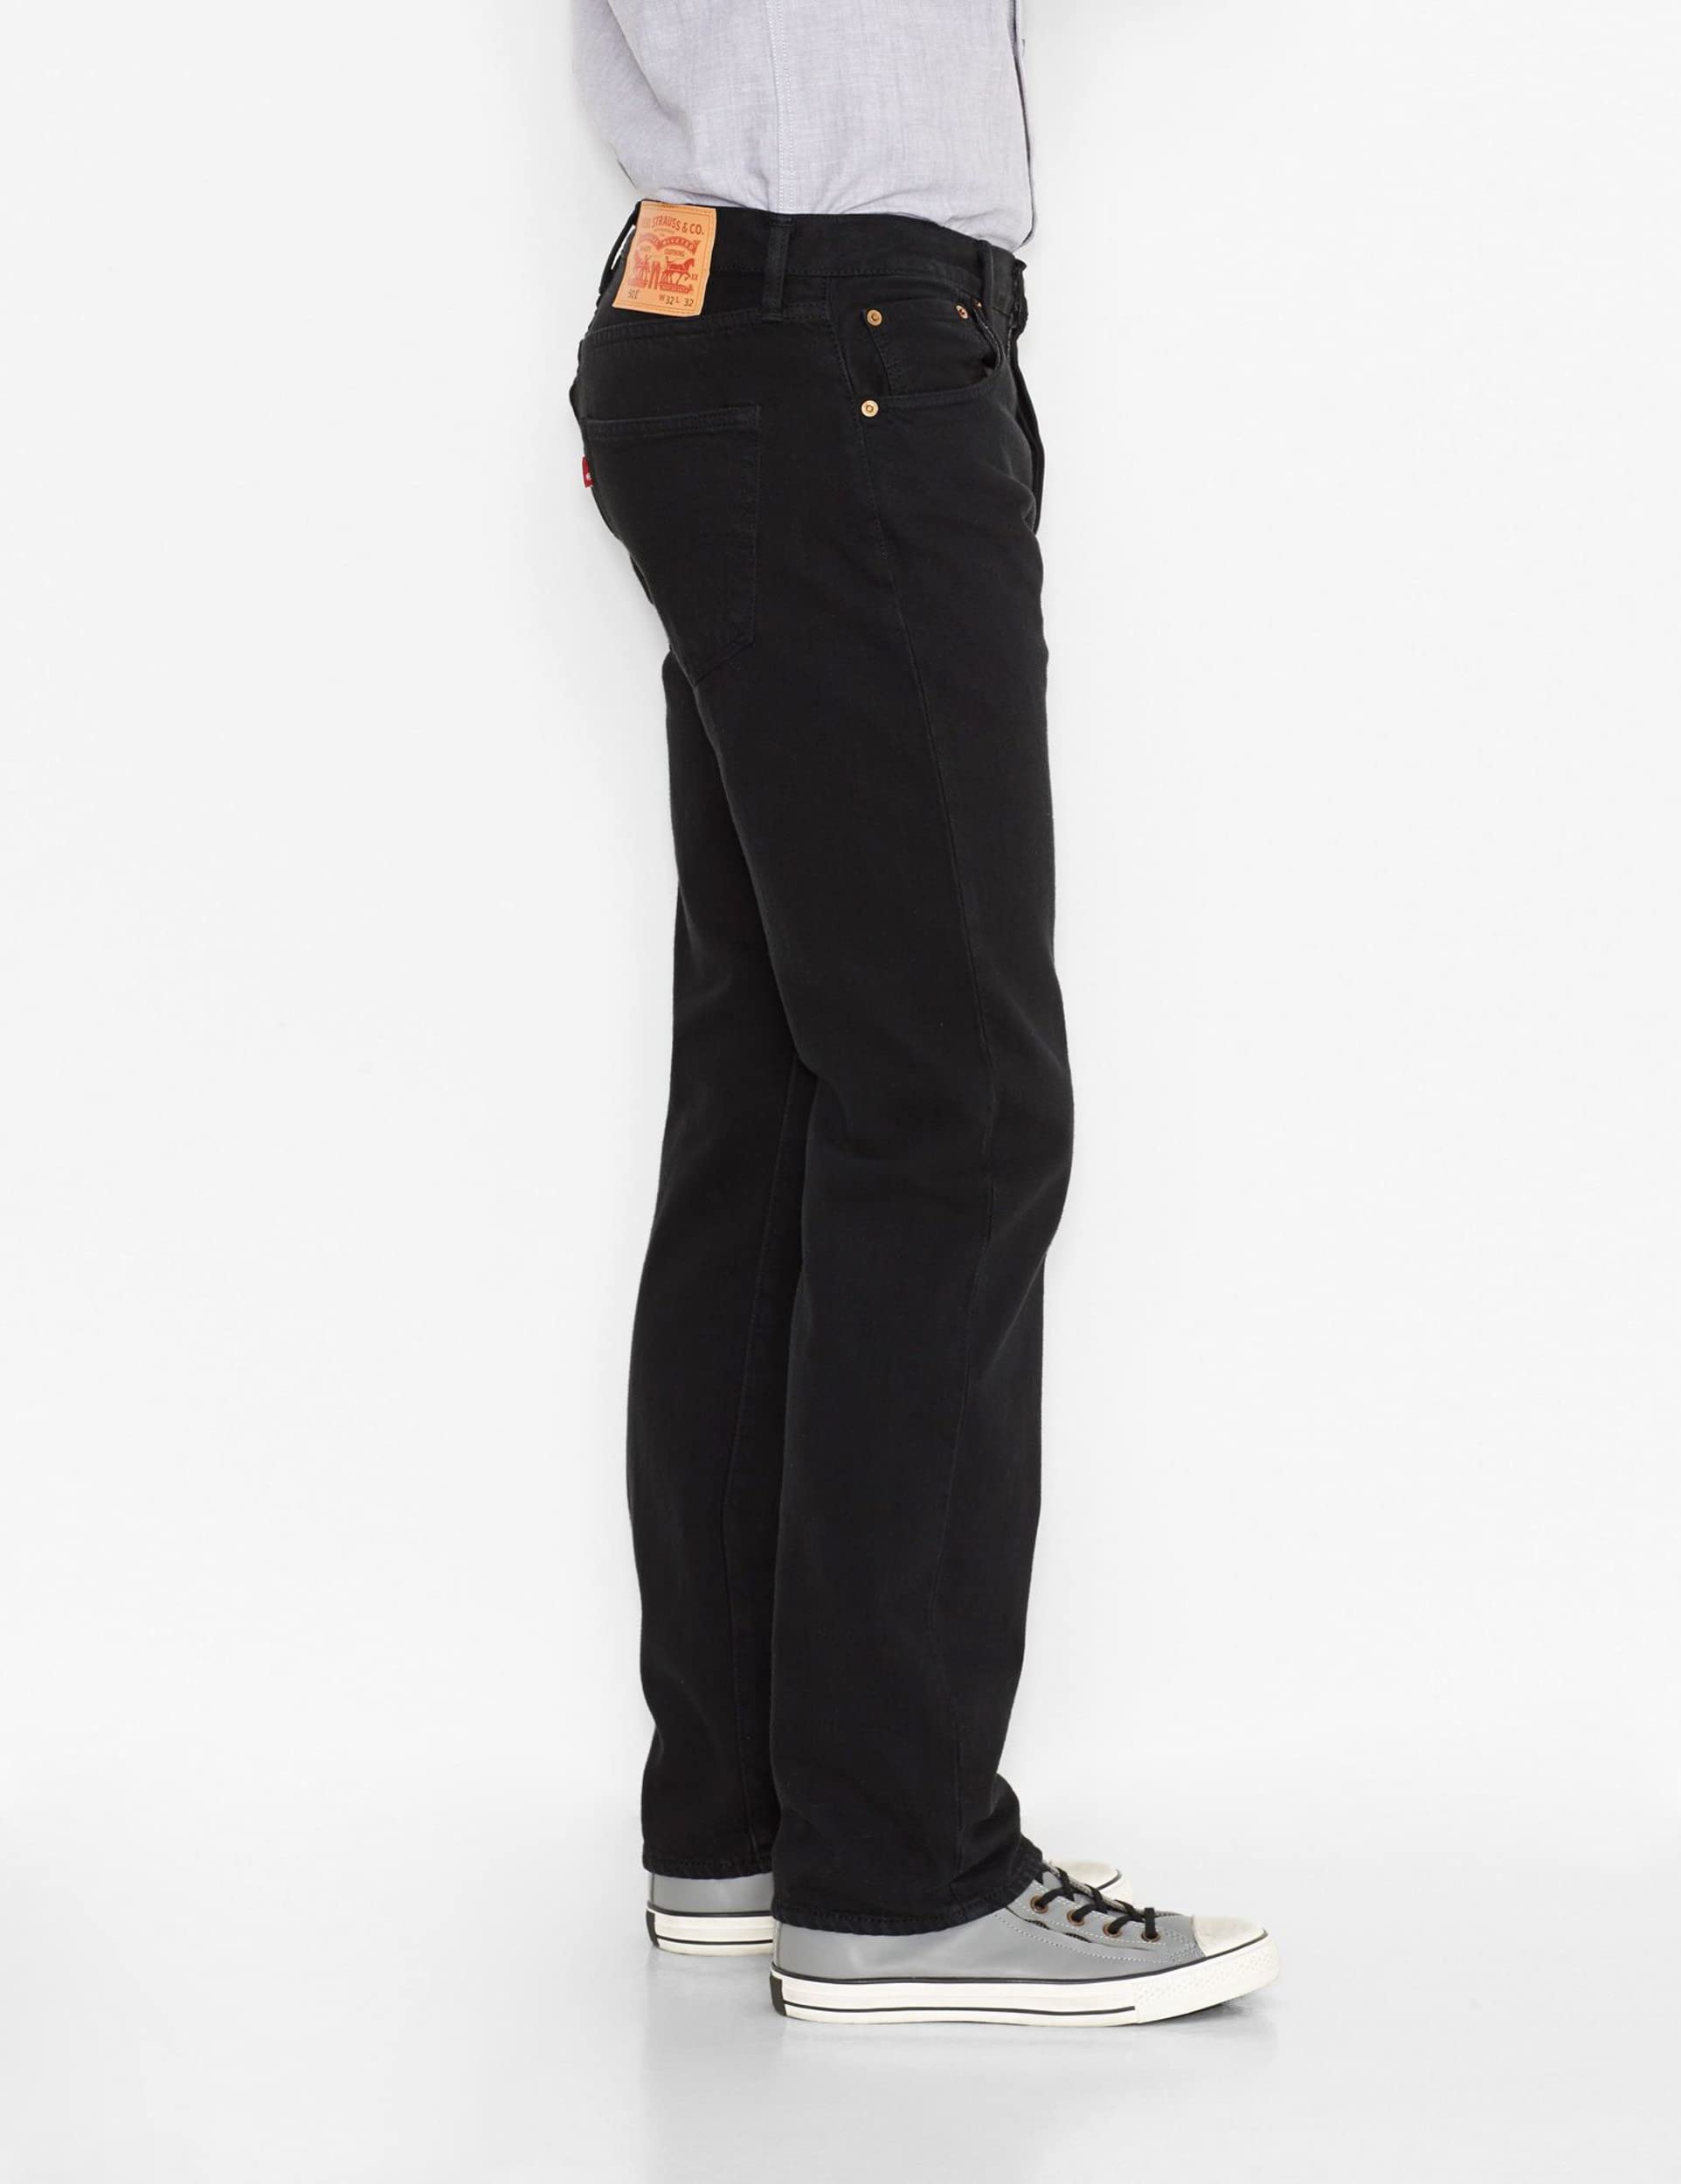 Mua Levi's Men's 501 Original Fit Jeans trên Amazon Mỹ chính hãng 2023 |  Giaonhan247